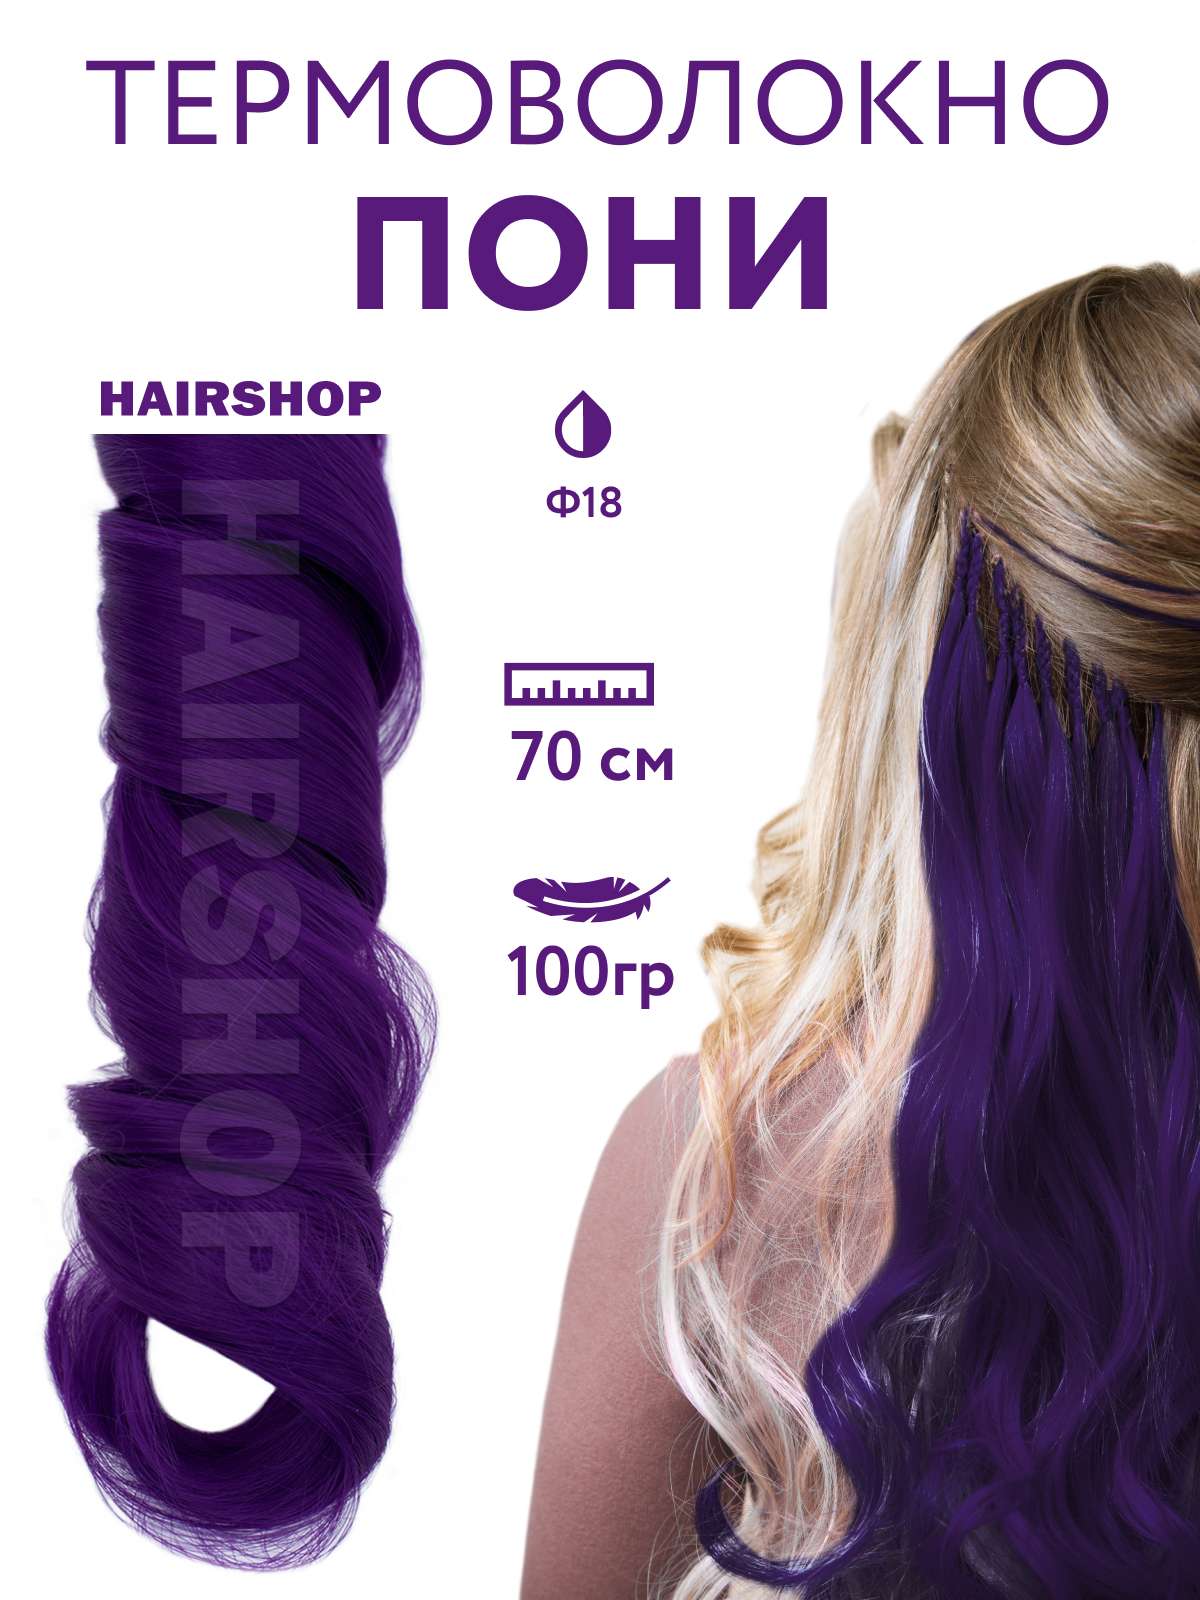 Канекалон HAIRSHOP Пони HairUp для точечного афронаращивания Ф18 Темно-фиолетовый 1,4м милый пони